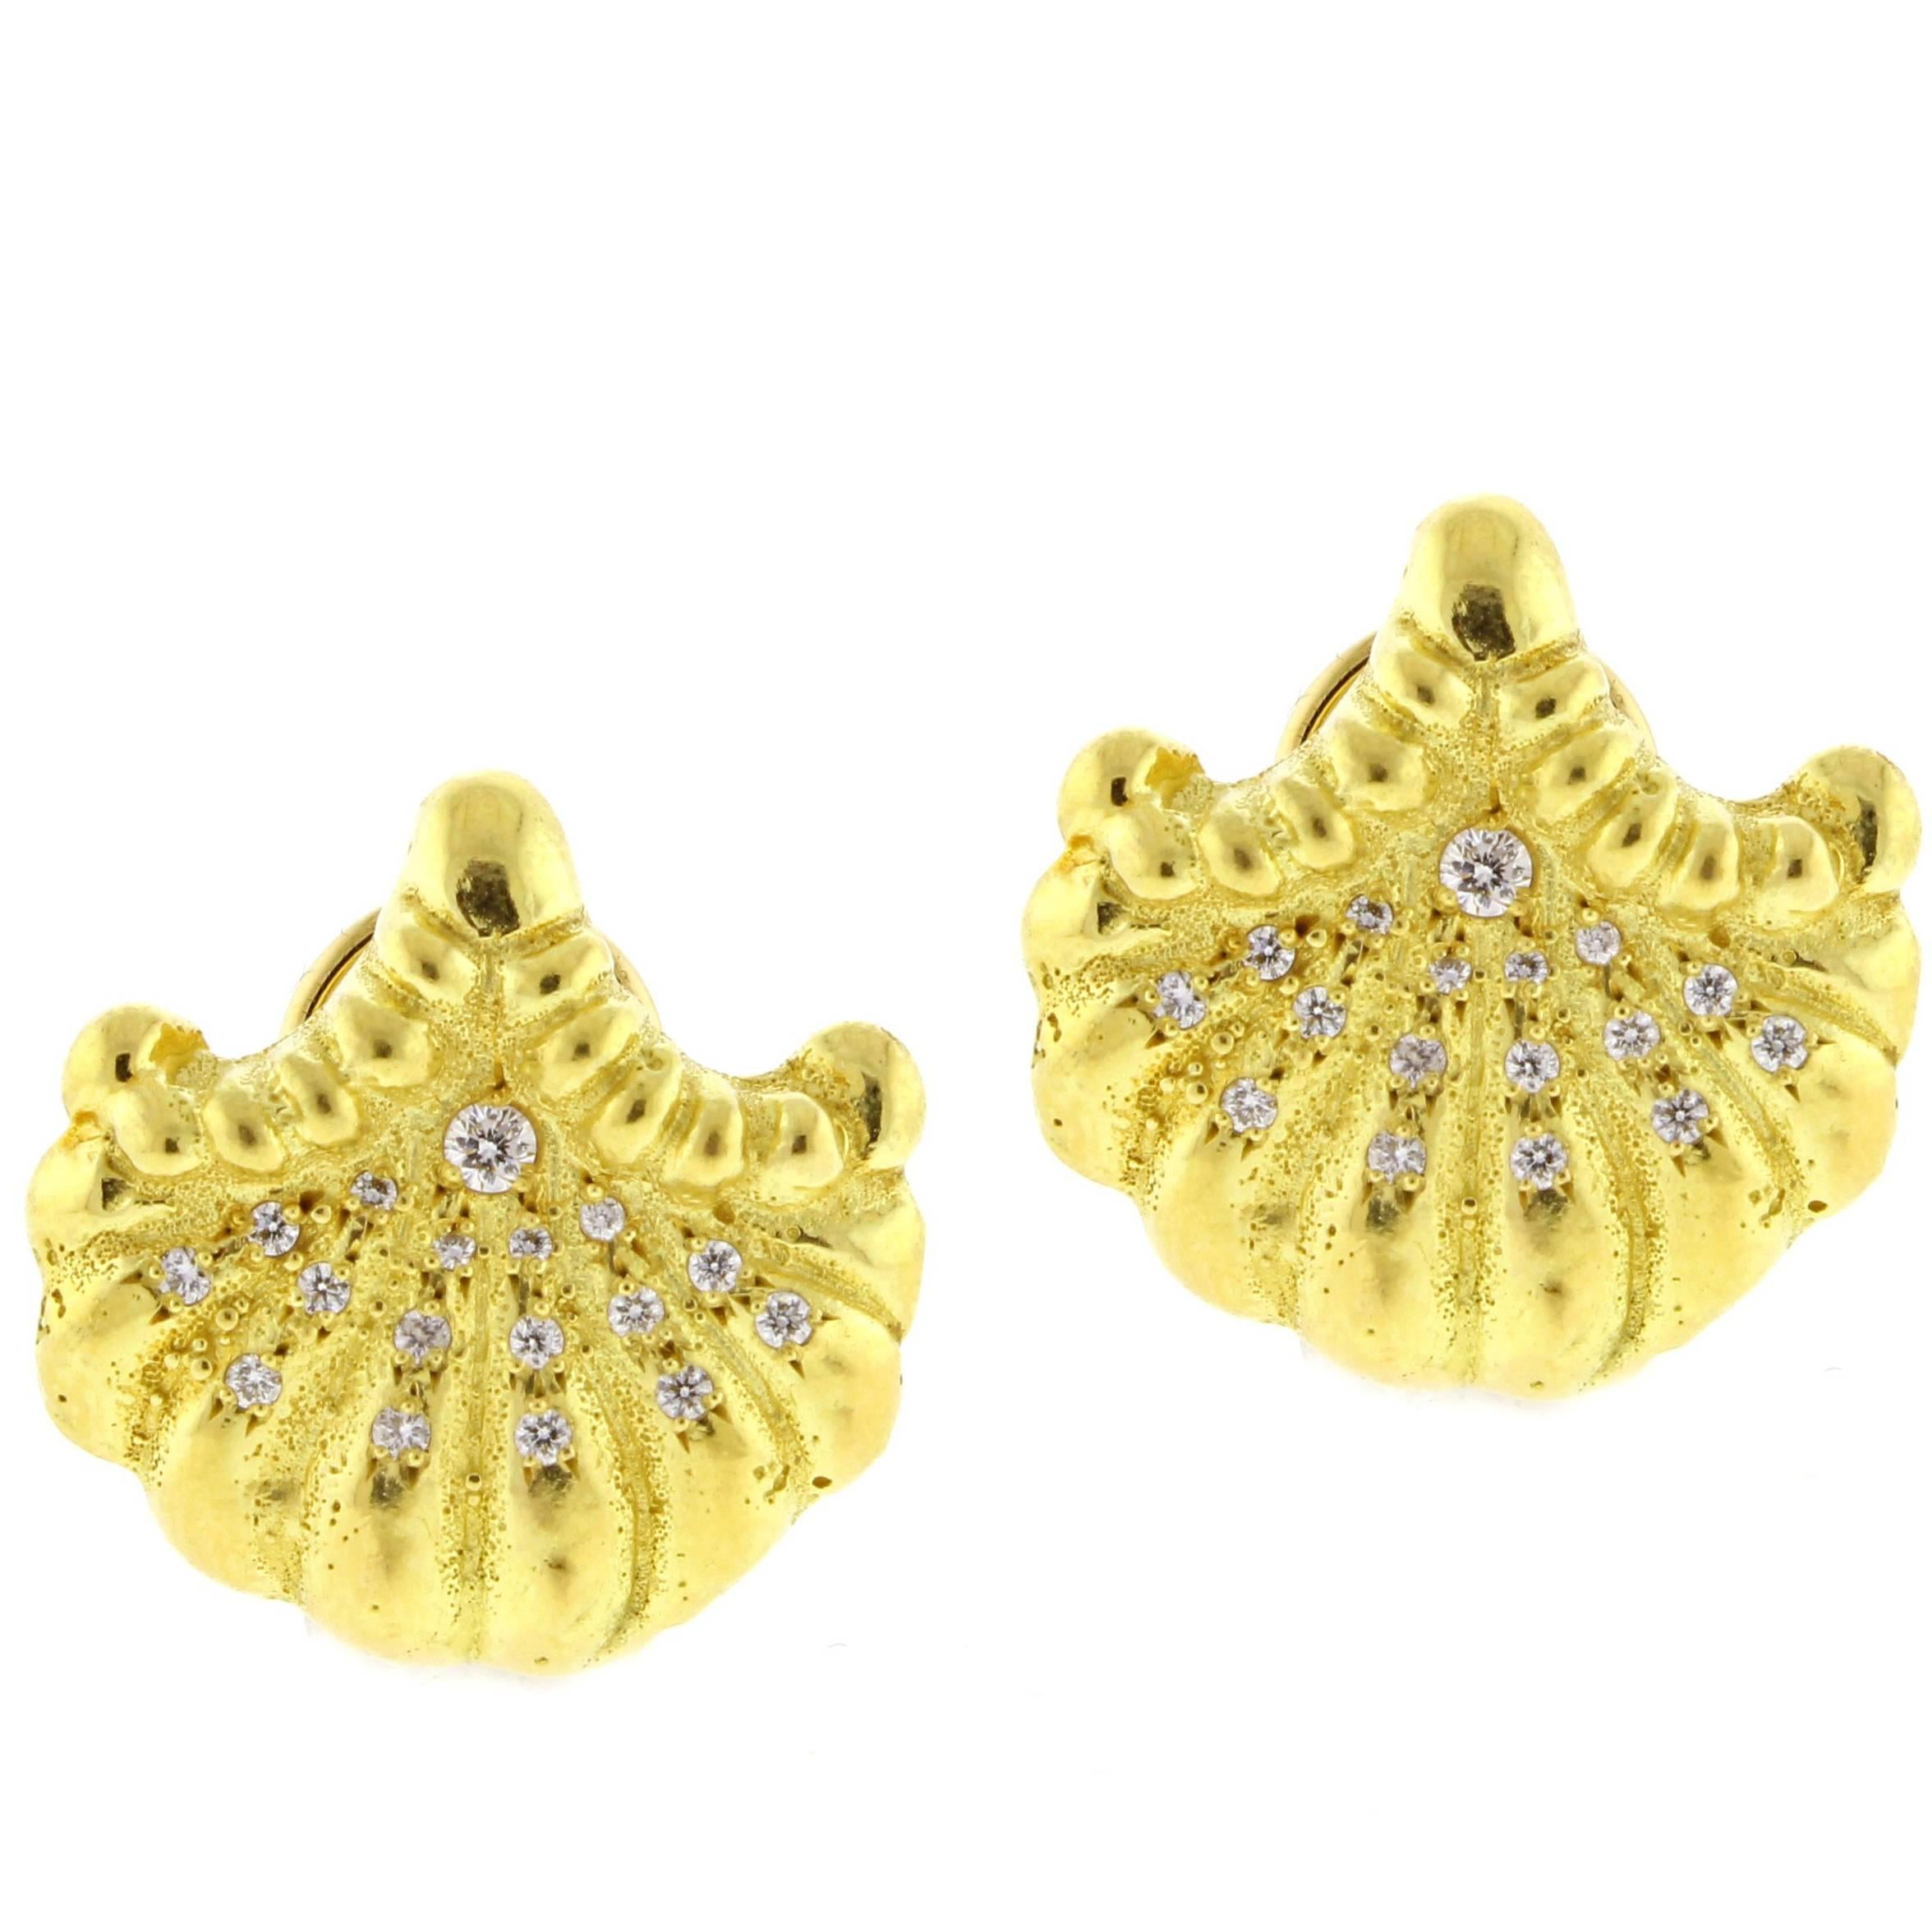 Elizabeth Gage Diamond Gold Shell Earrings